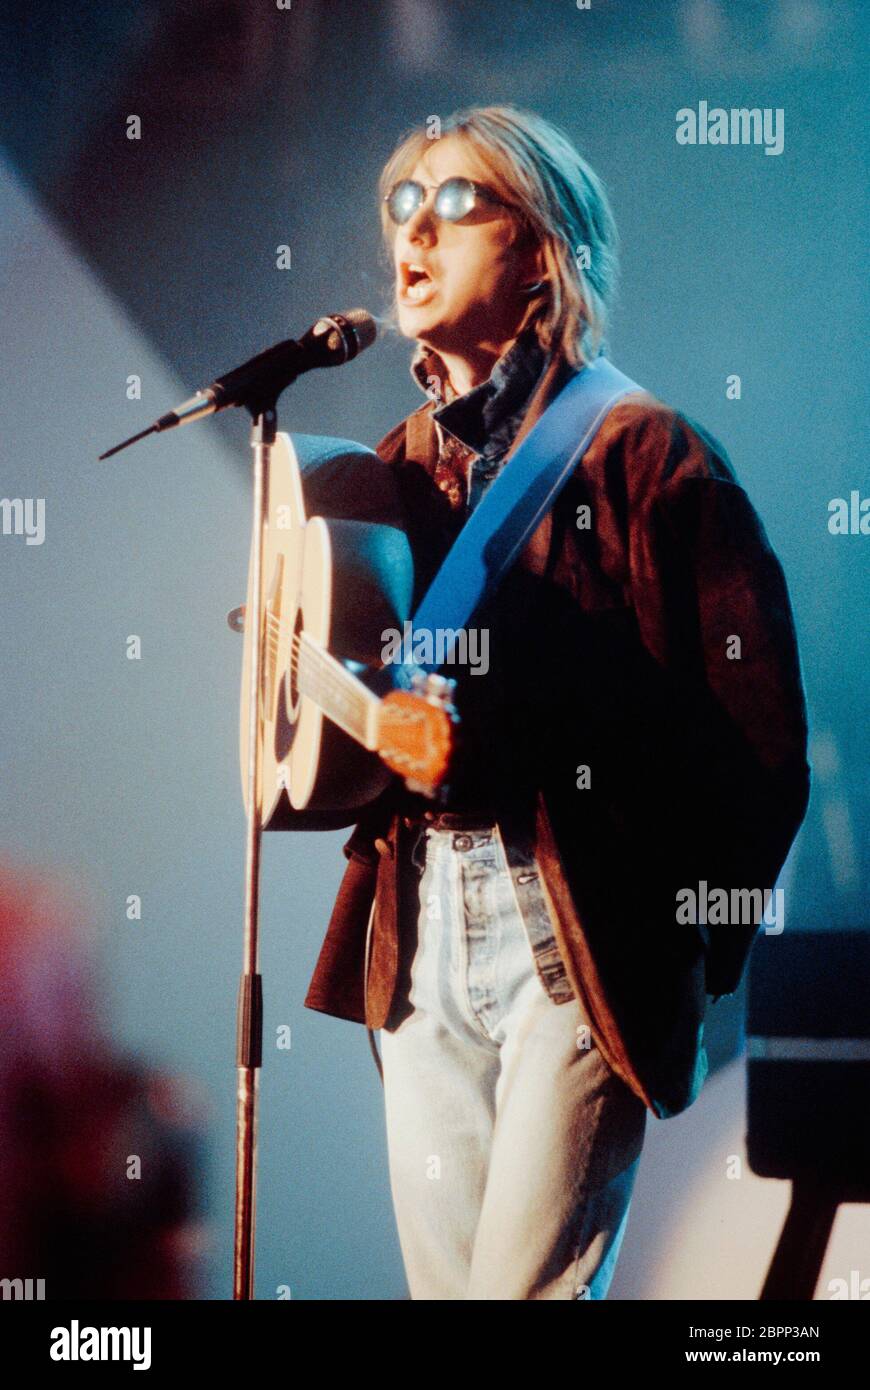 'Talk Talk' TV-Auftritt 80er Jahre - Der britische Sänger und Frontmann der Populband 'Talk Talk' Mark Hollis. Foto Stock